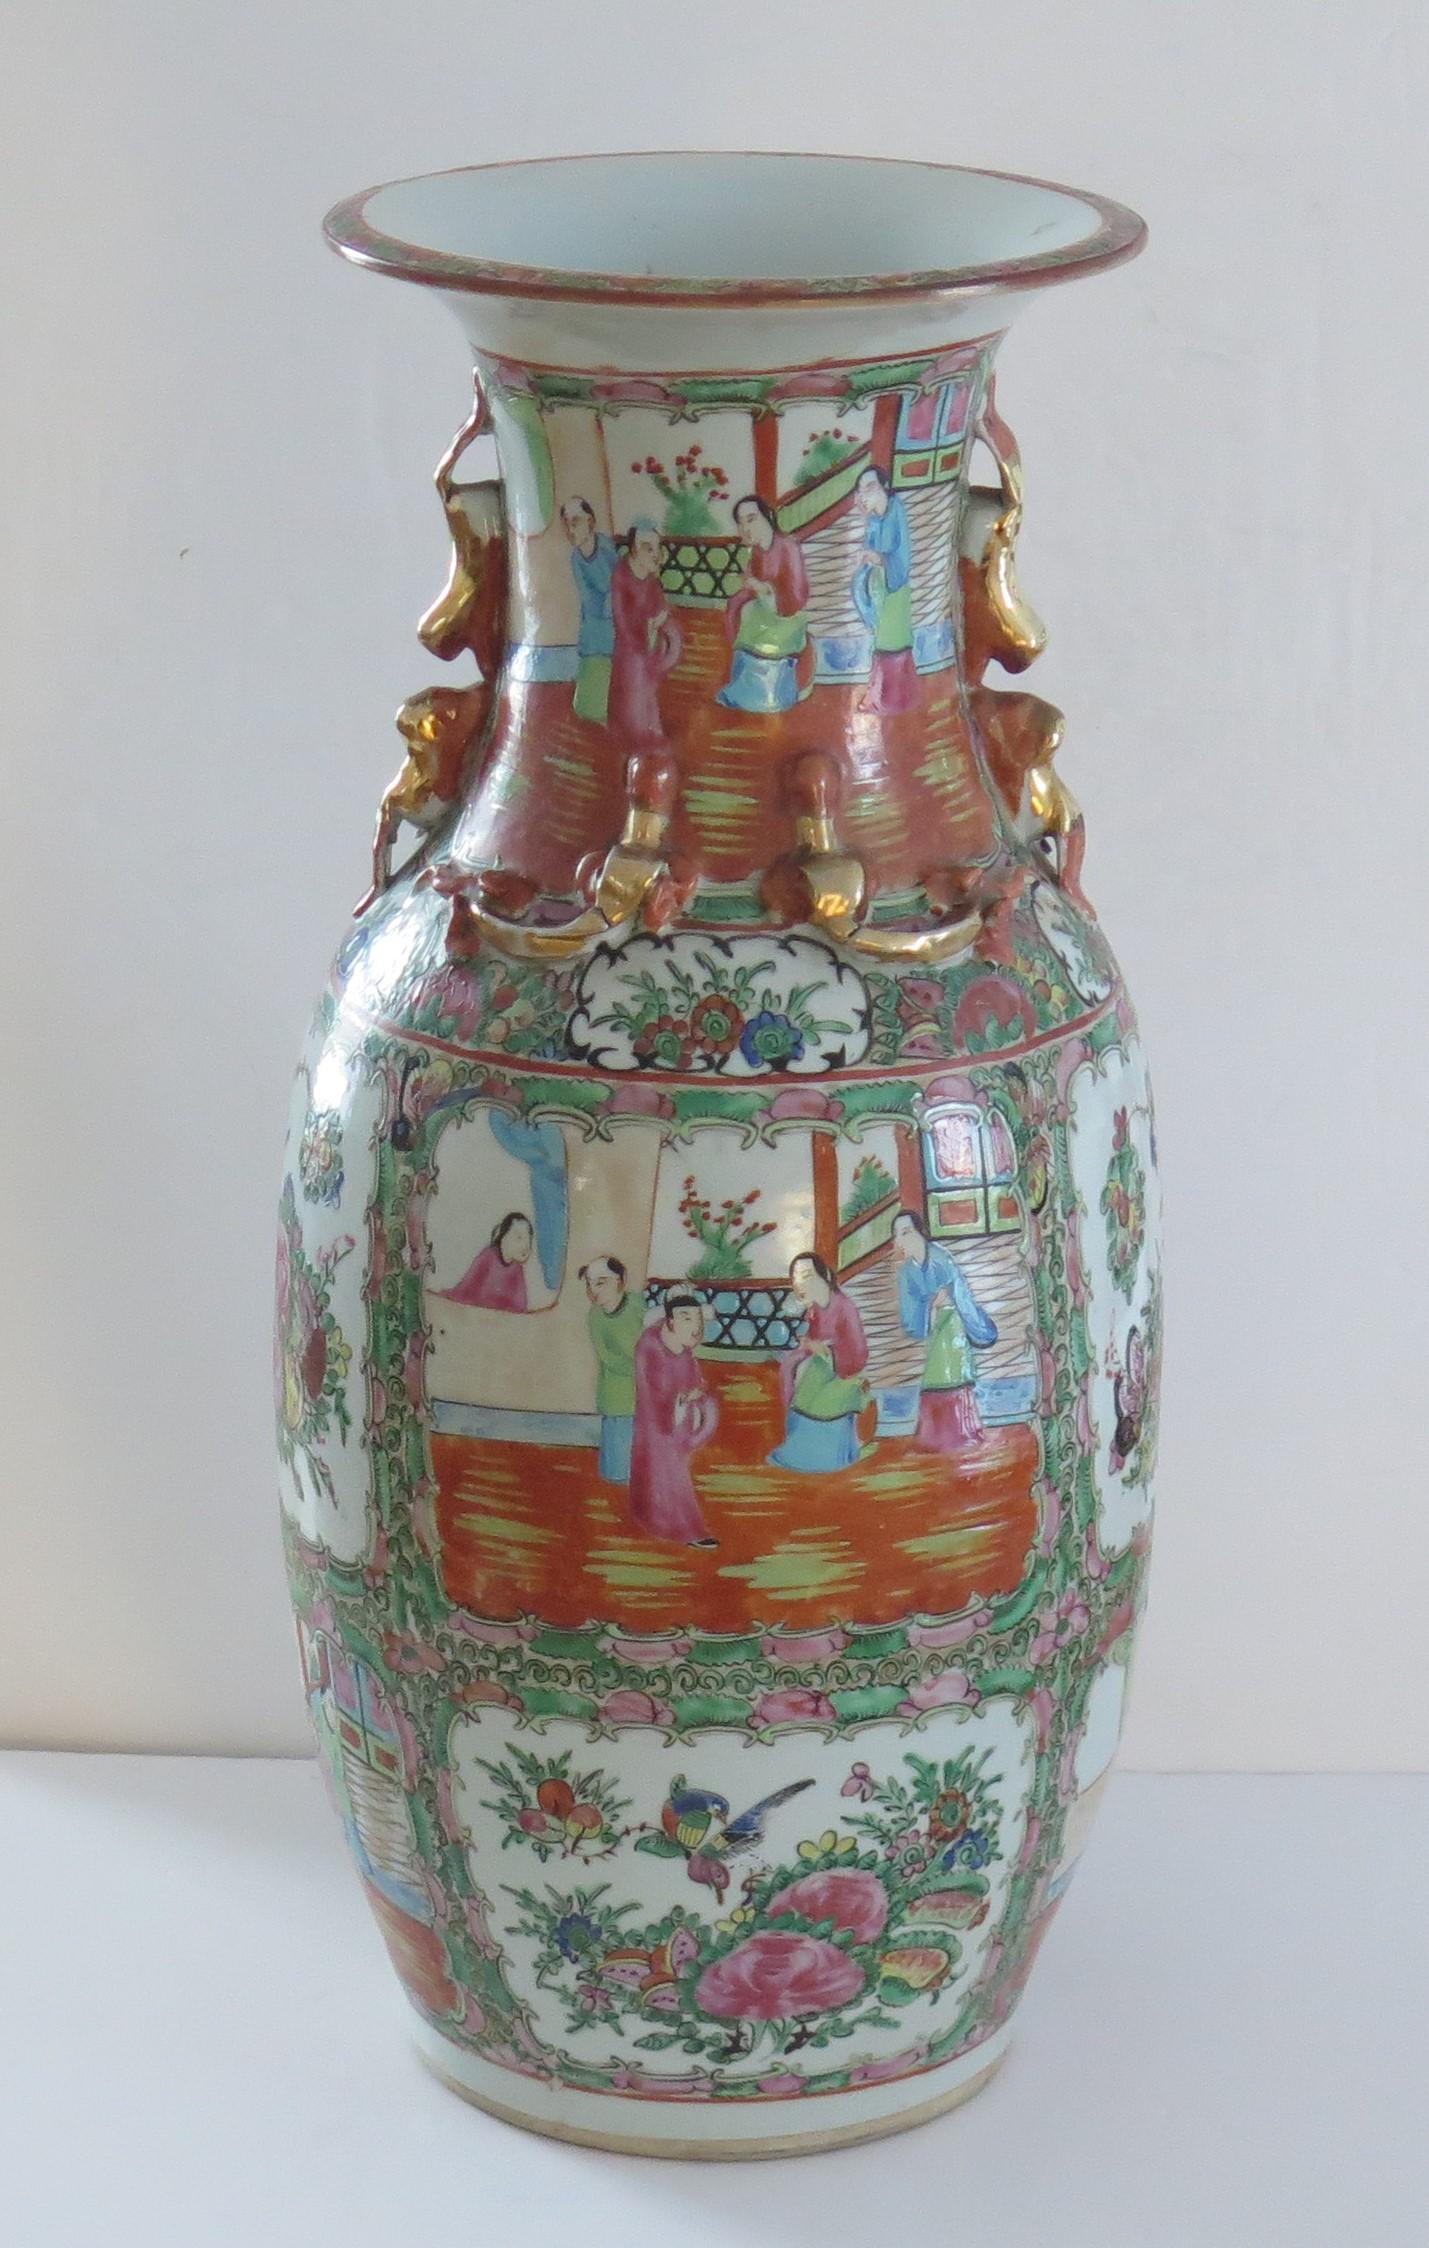 Dies ist eine sehr gute Qualität, sehr dekorative chinesische Export, Imperial Kanton, Porzellan, Rose Medaillon, große Vase, die wir auf die Mitte des 19. Jahrhunderts, Qing-Dynastie, ca. 1850.

Die Vase hat eine Balusterform mit ausgestelltem Rand